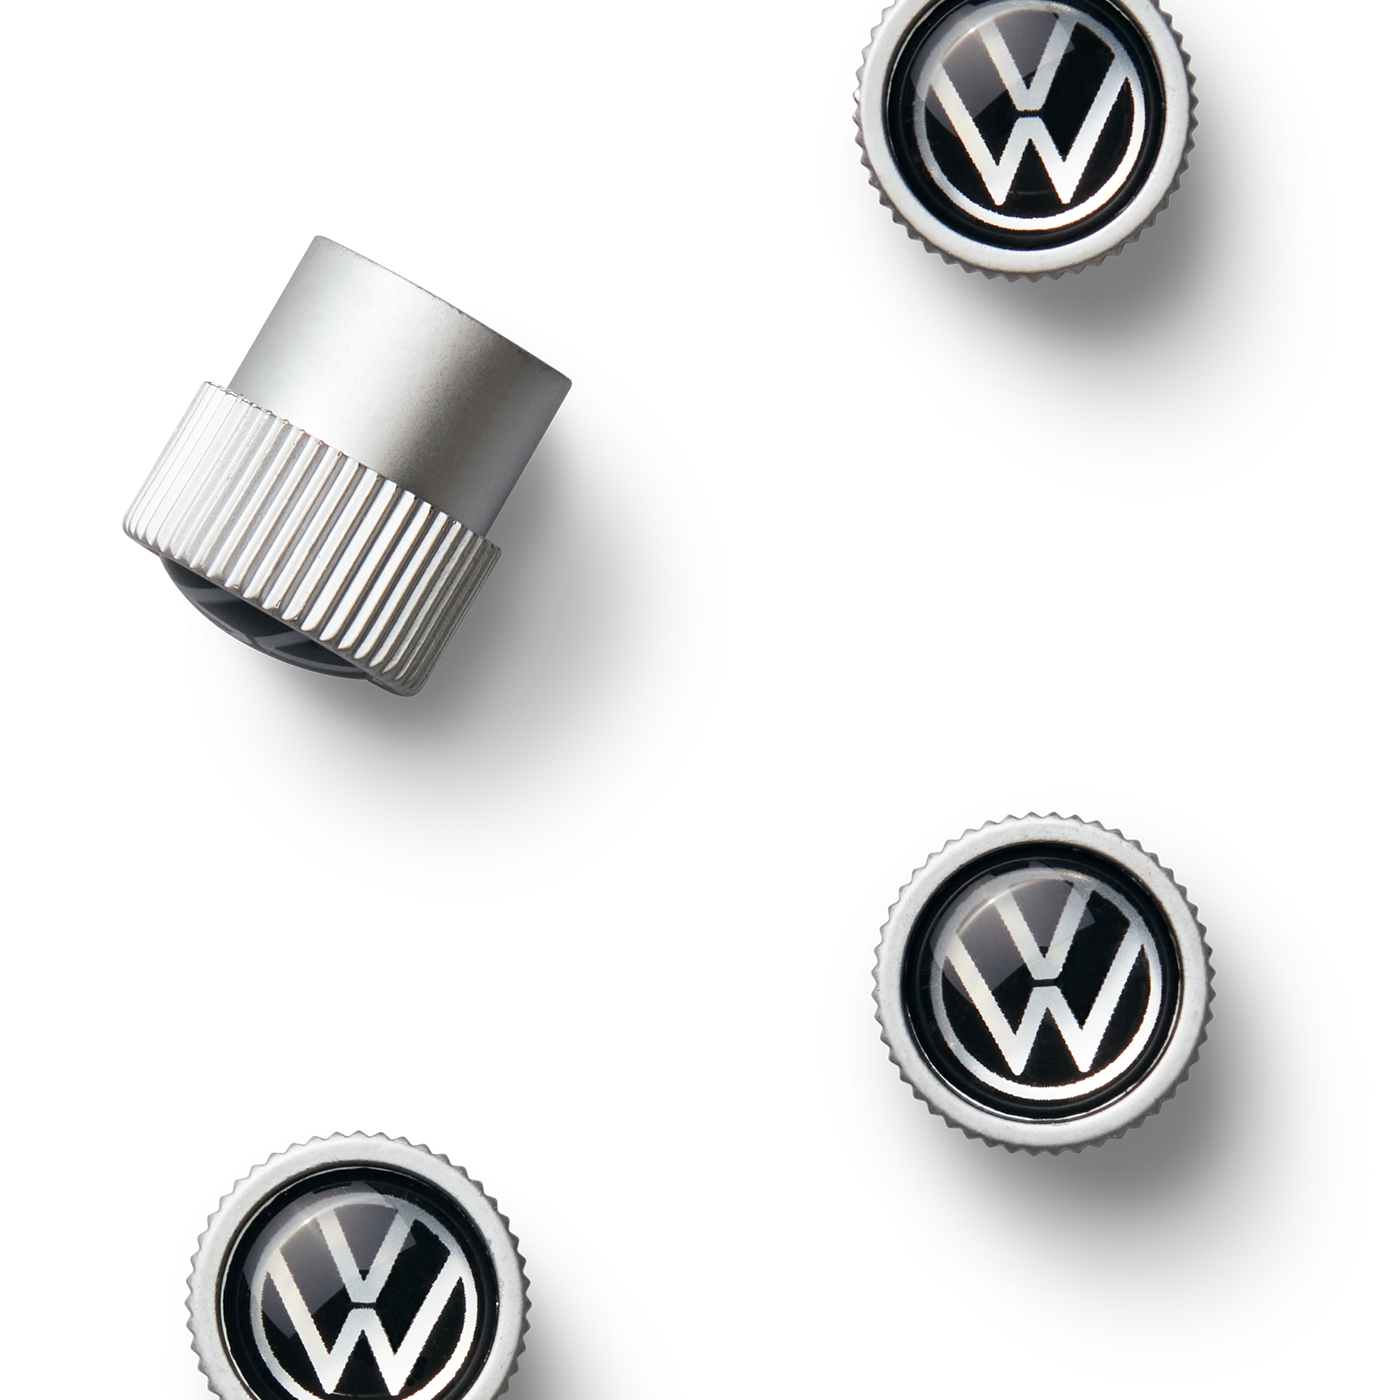 Volkswagen Valve Stem Caps